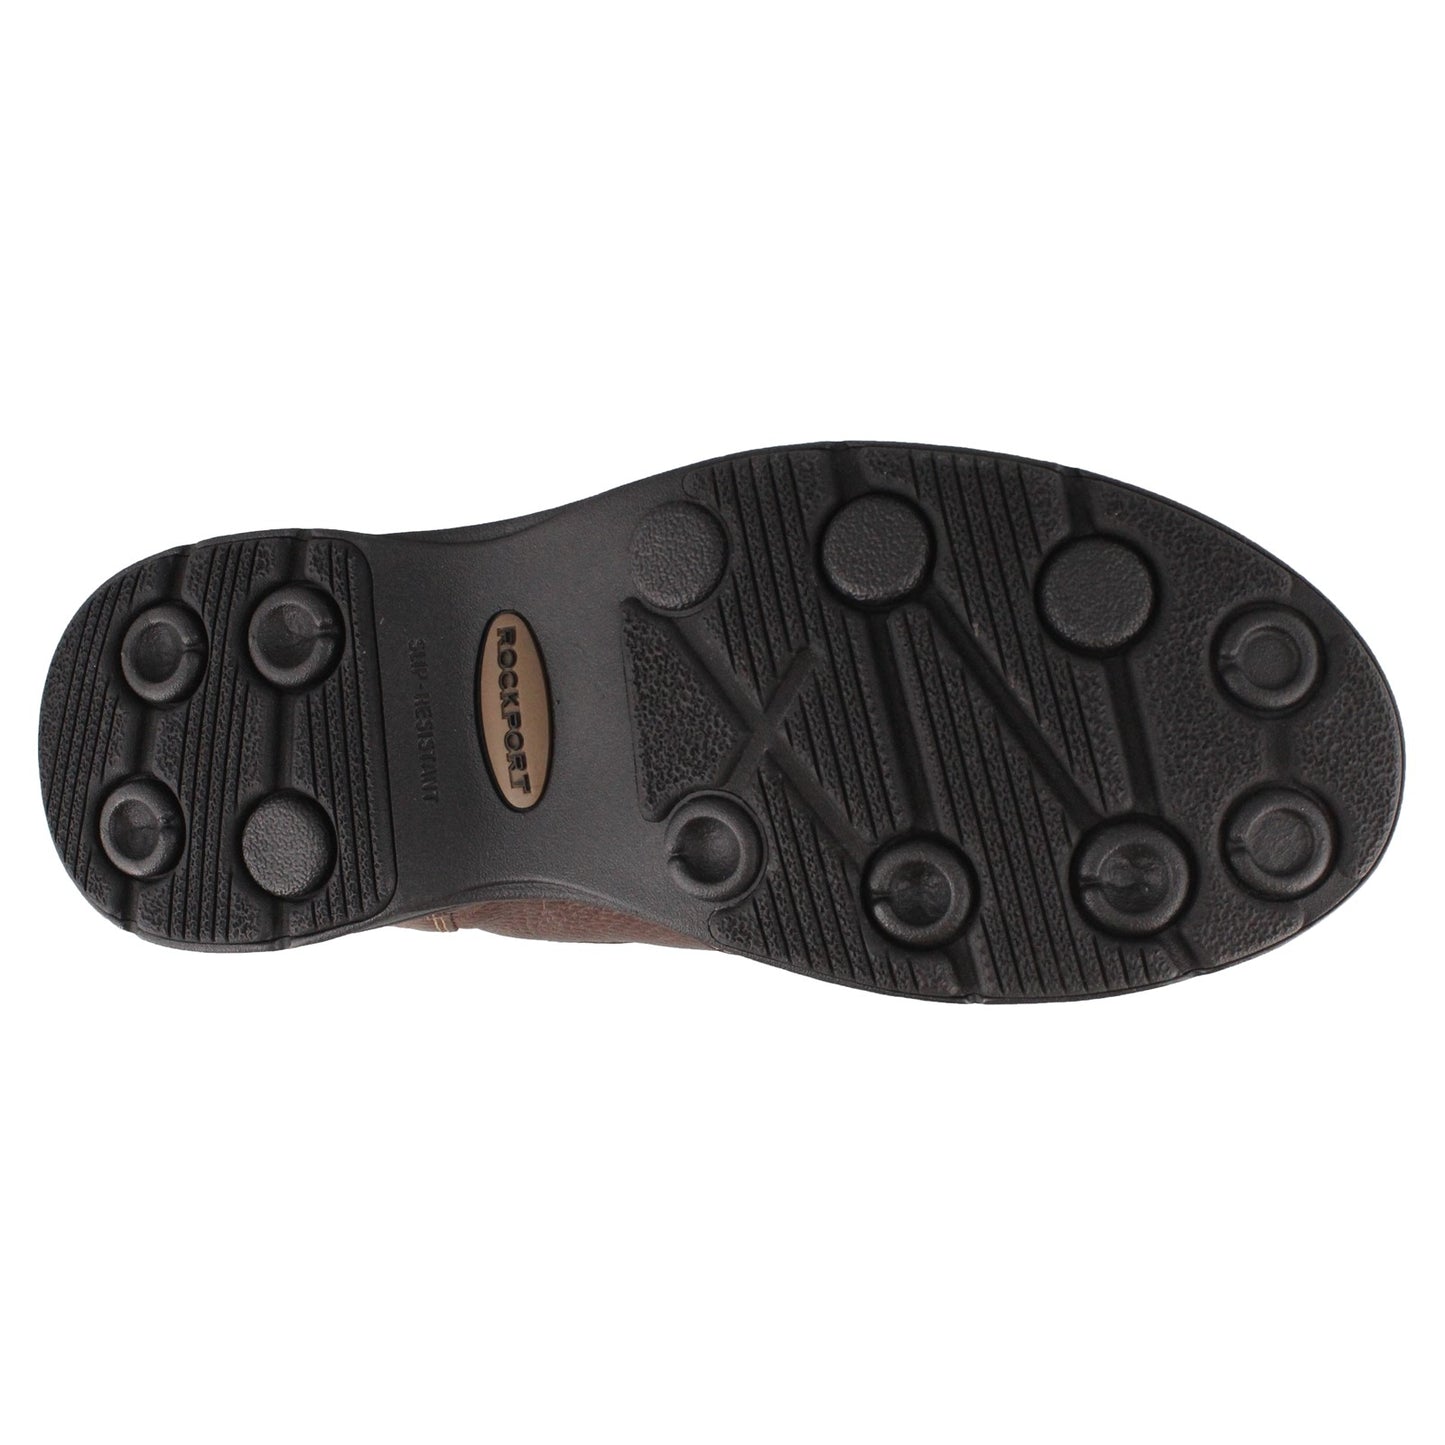 Peltz Shoes  Men's Rockport Prowalker Eureka Plus Slip-On BRIDLE CG8975